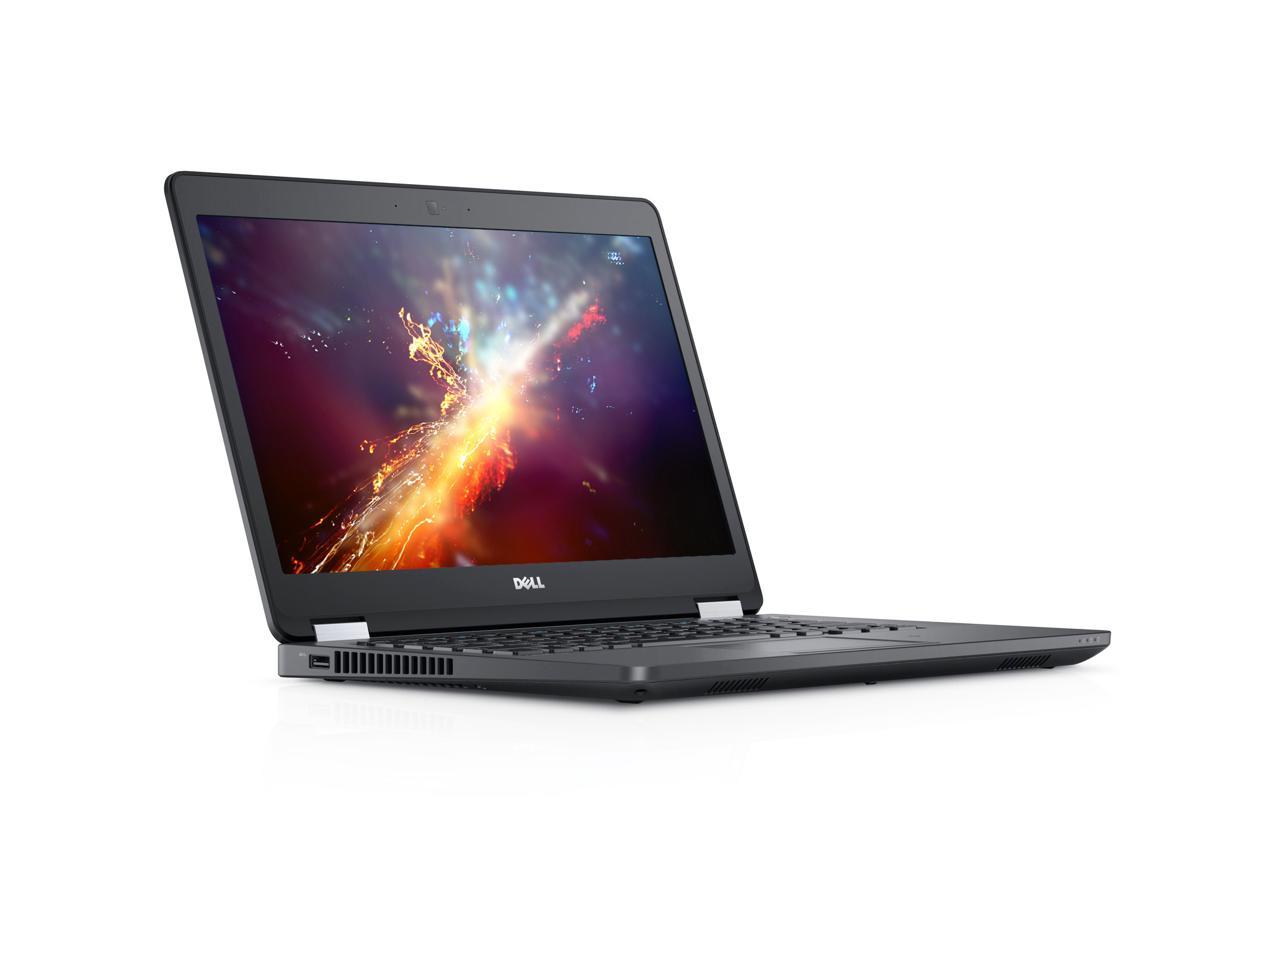 Grade B LCD Dell Latitude E5470 14" Laptop, Intel Core i5 6300U 2.4Ghz, 16GB DDR4, 256GB M.2 SSD, HDMI, Webcam, Windows 10 Pro x64